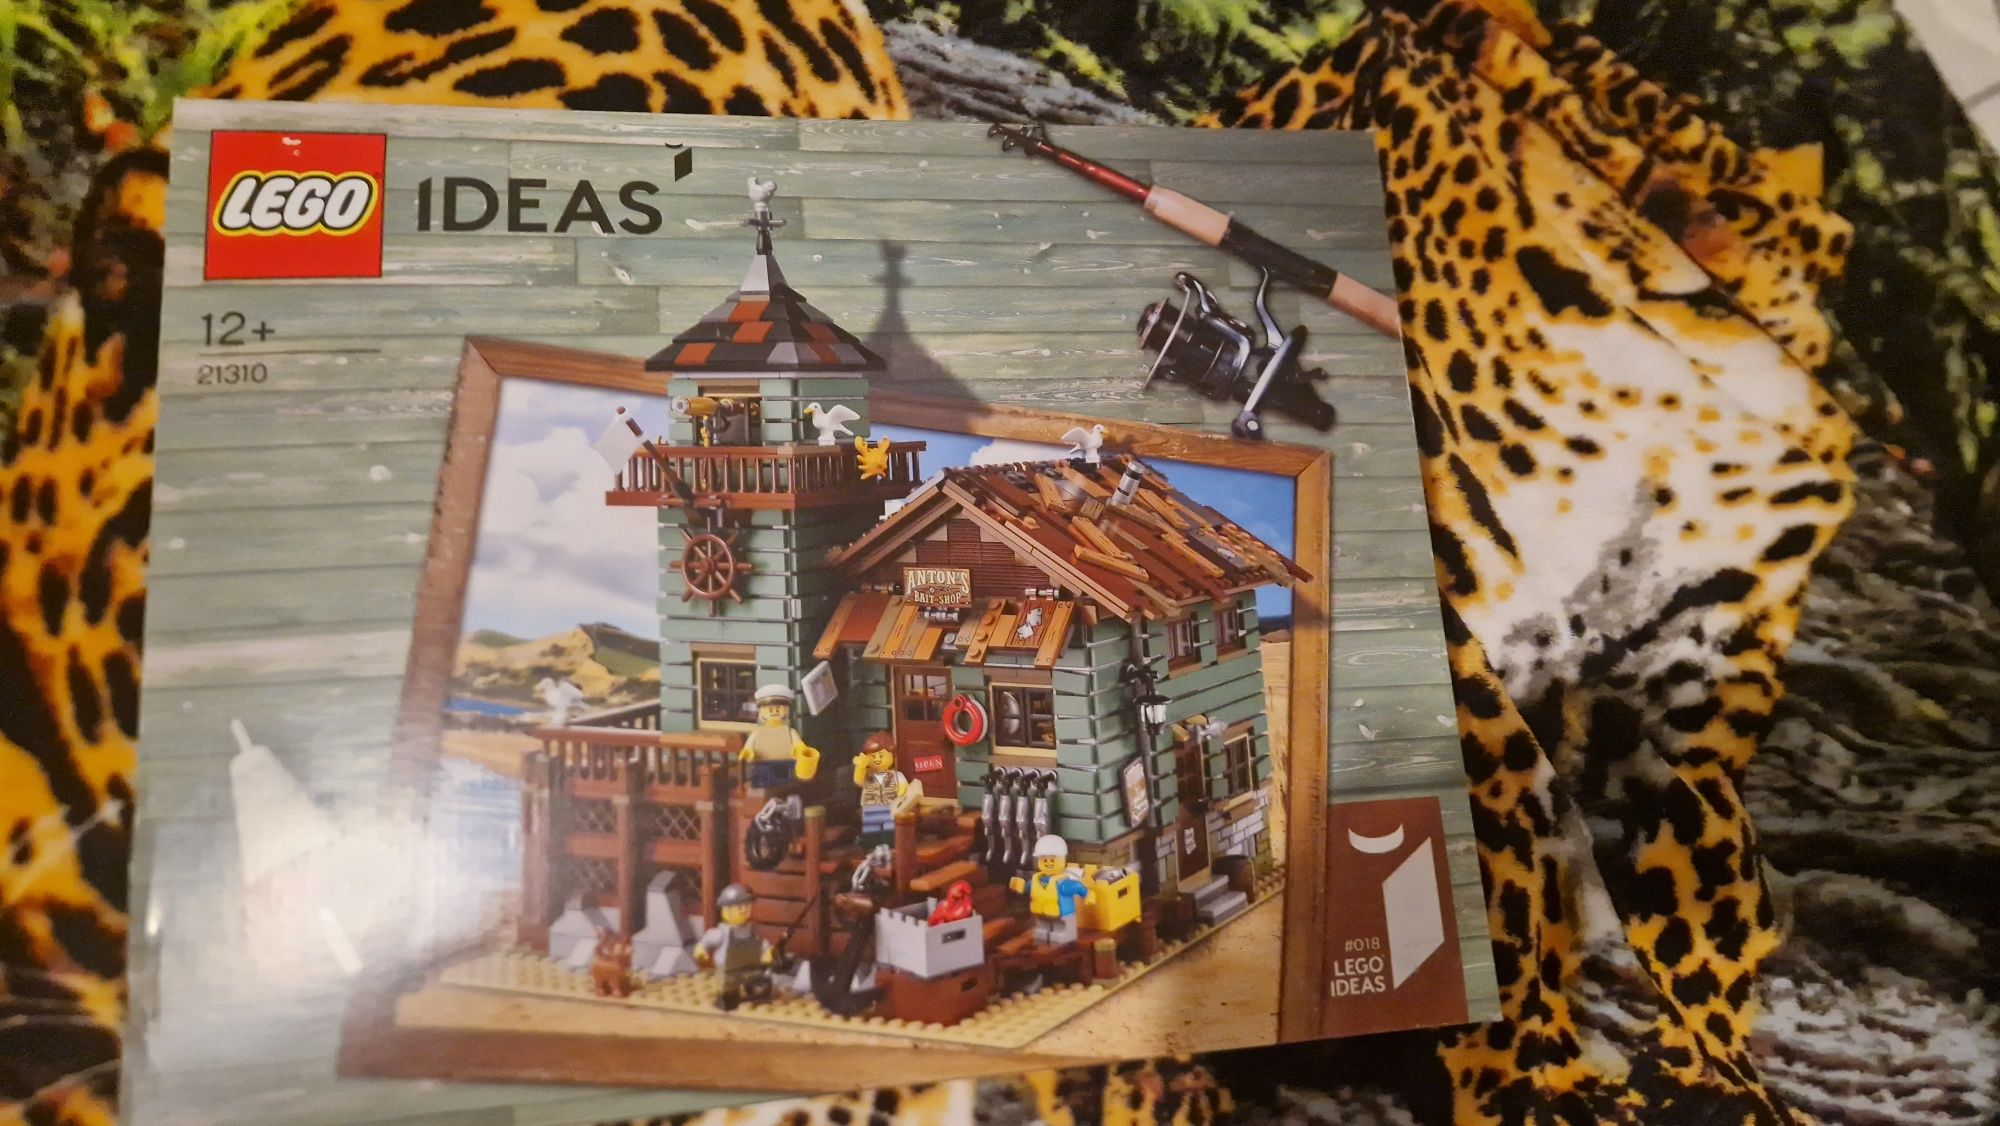 Klocki LEGO Ideas 21310 - Stary sklep wędkarski

Zestaw nowy I nigdy n